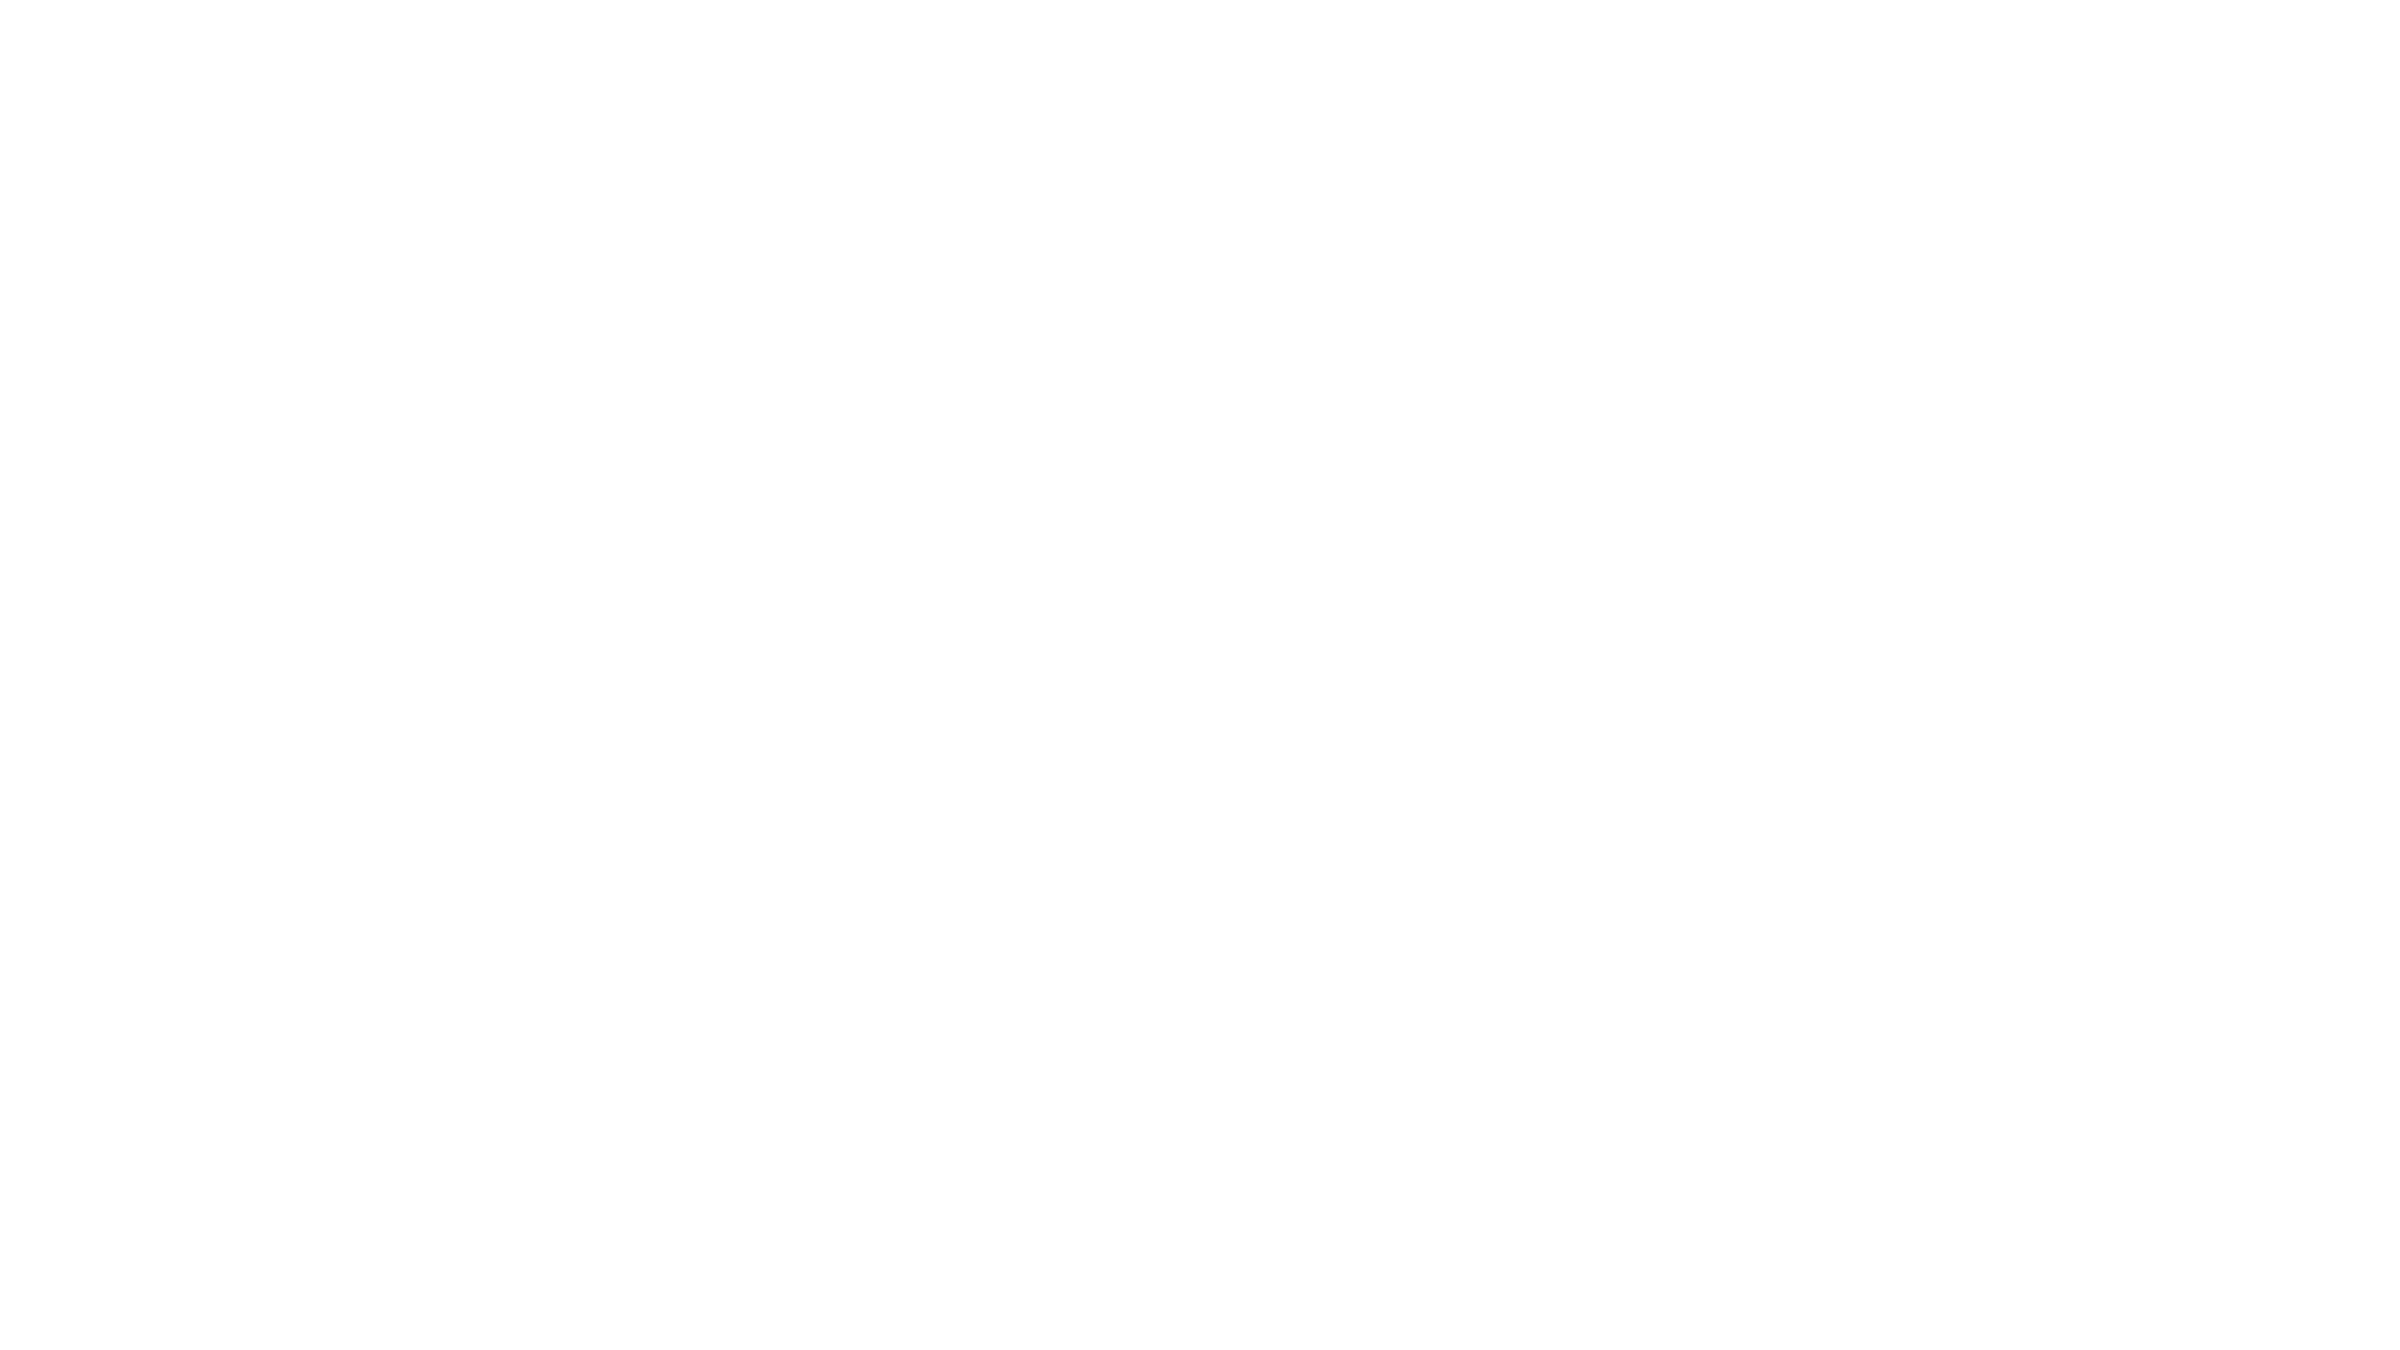 medallia_logo_white